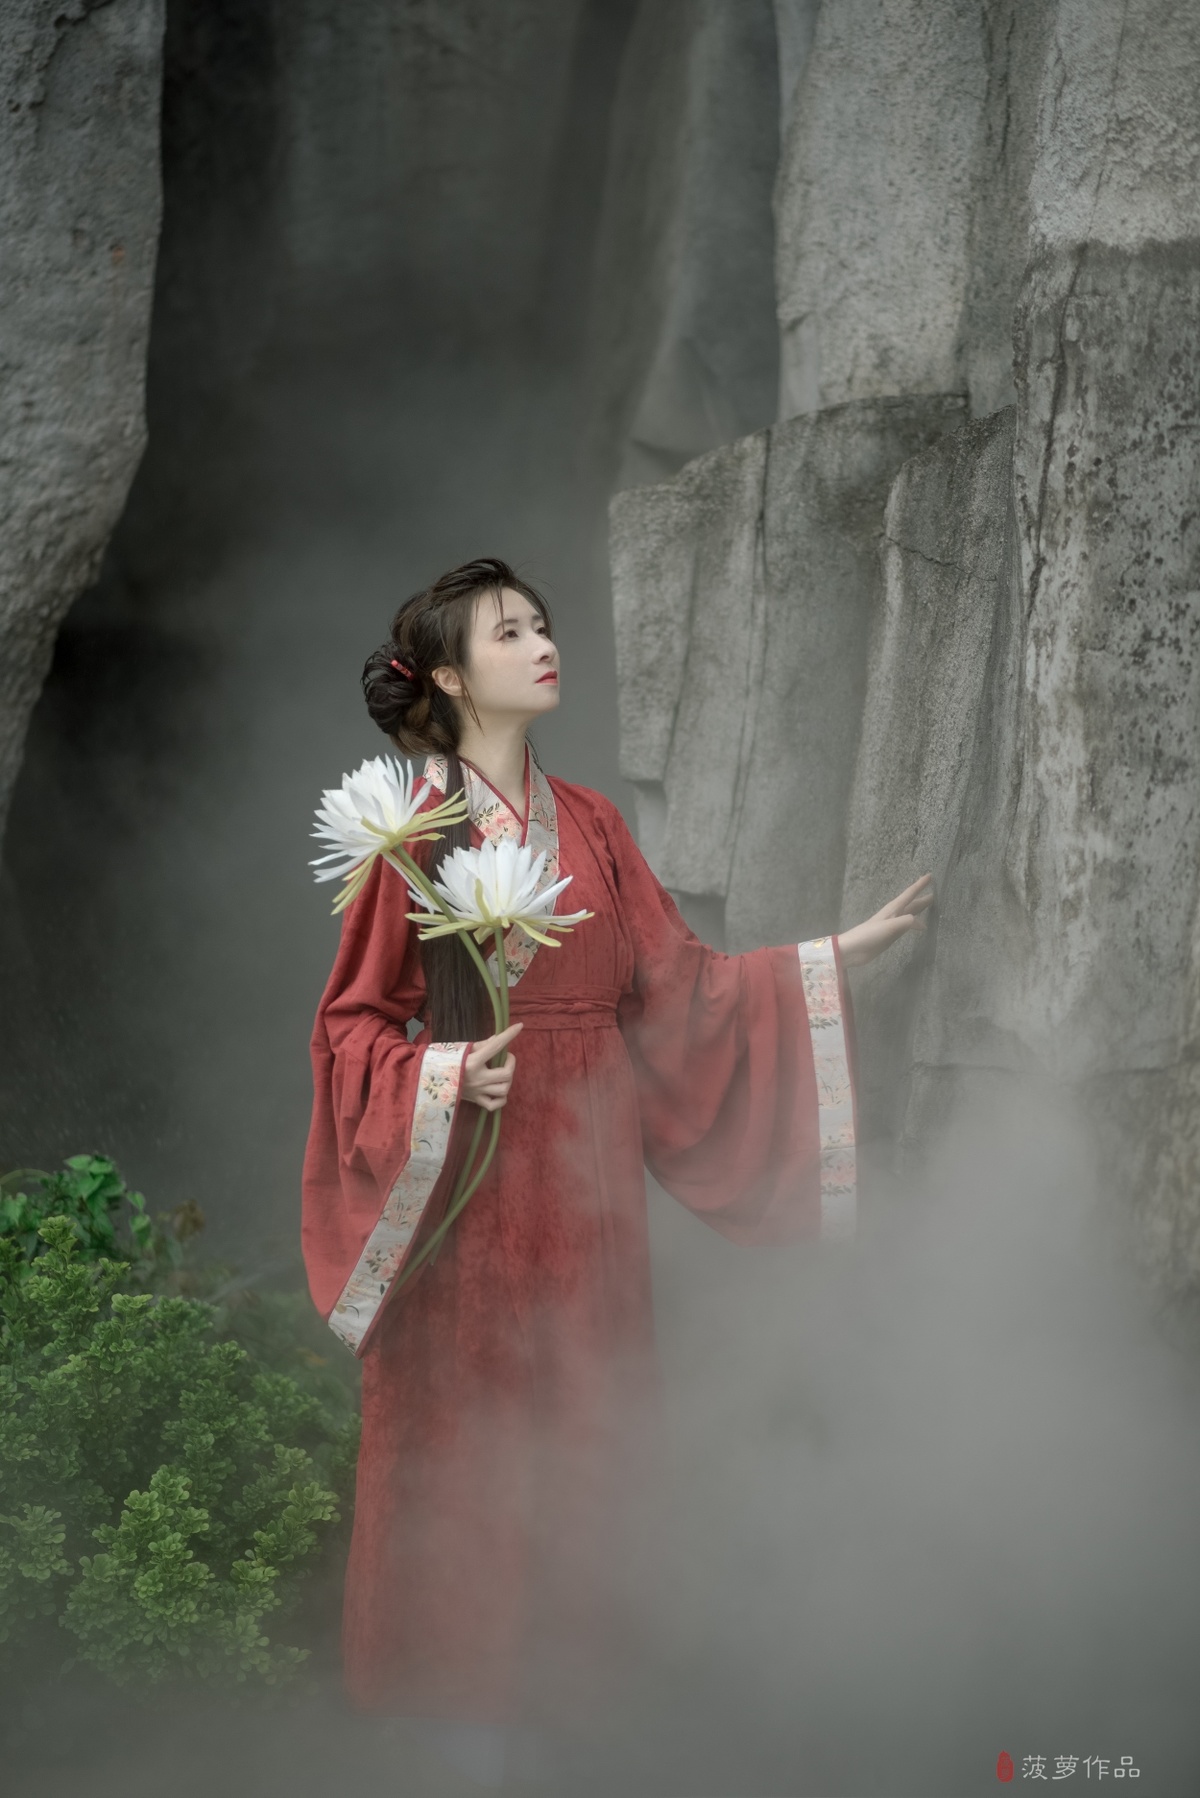 一位穿着传统红色和服的女孩手里拿着白色的花站在瀑布前